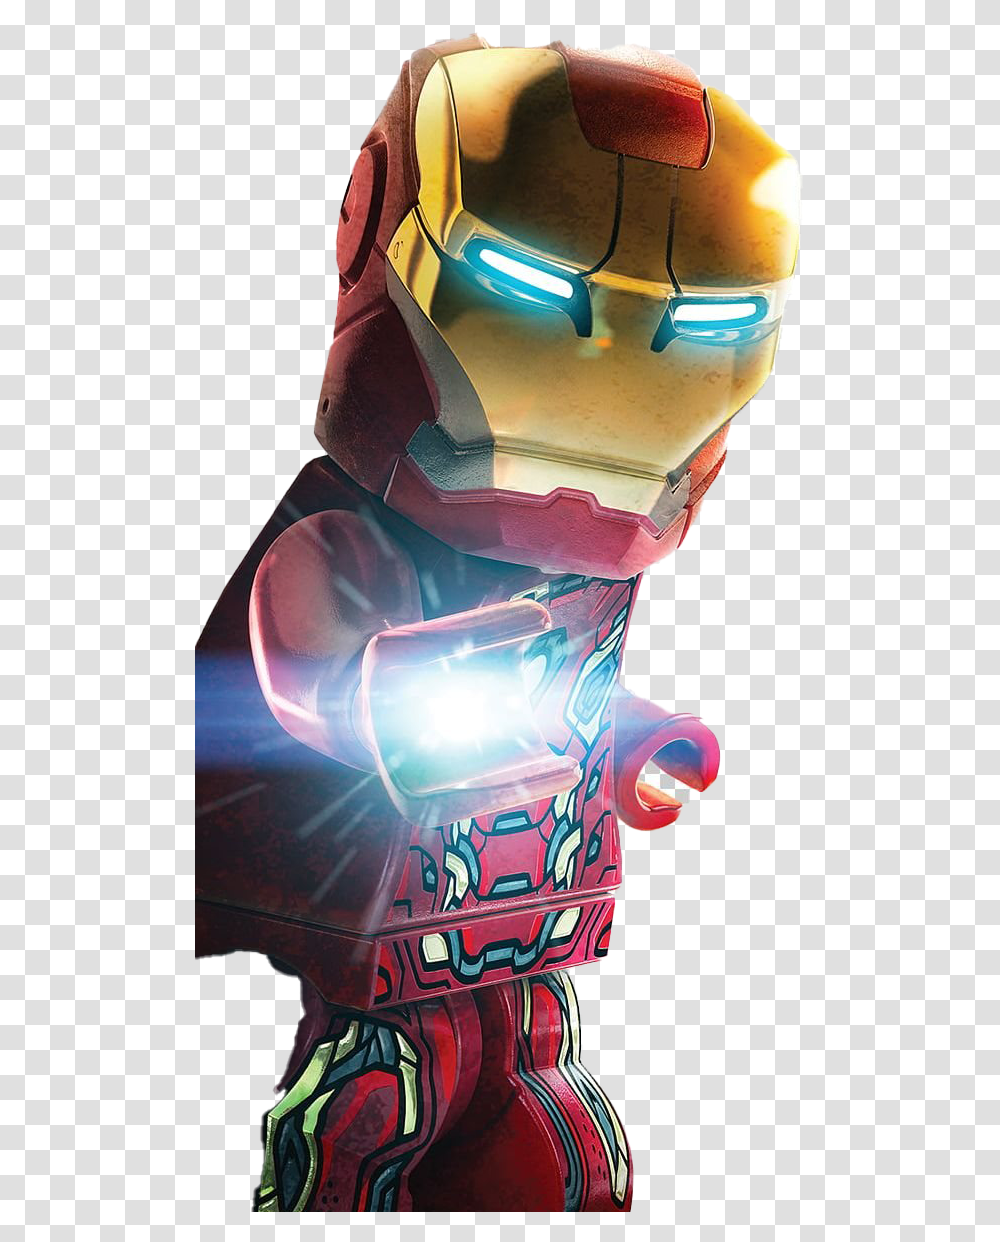 Marvel Avengers Game File Lego Marvel Super Heroes Iron Man, Helmet, Apparel, Light Transparent Png